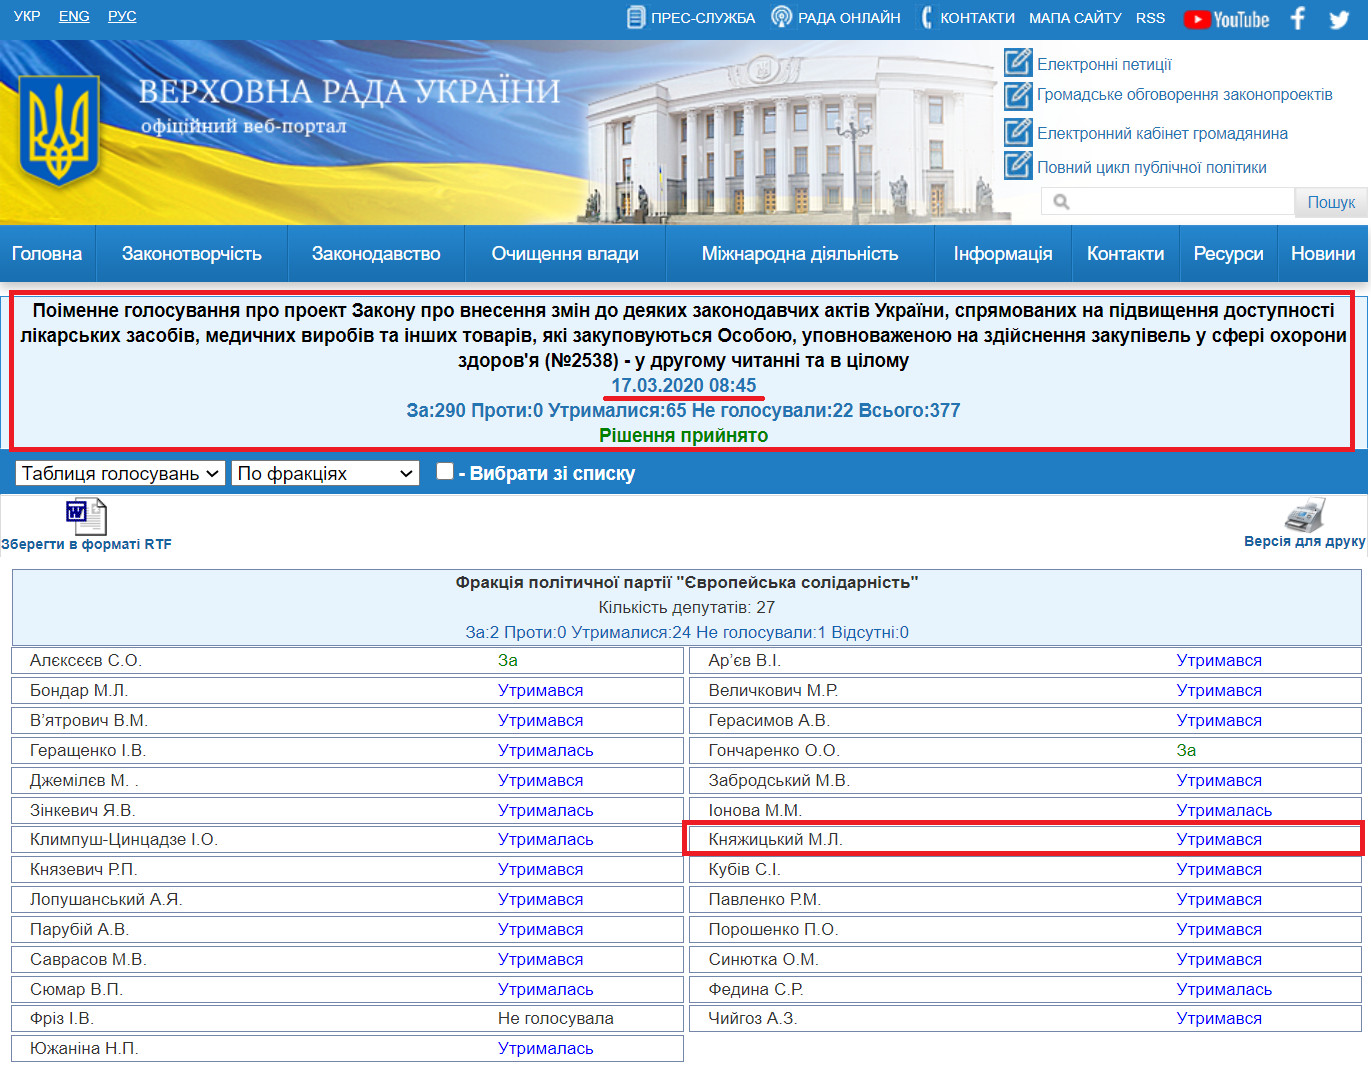 http://w1.c1.rada.gov.ua/pls/radan_gs09/ns_golos?g_id=4700